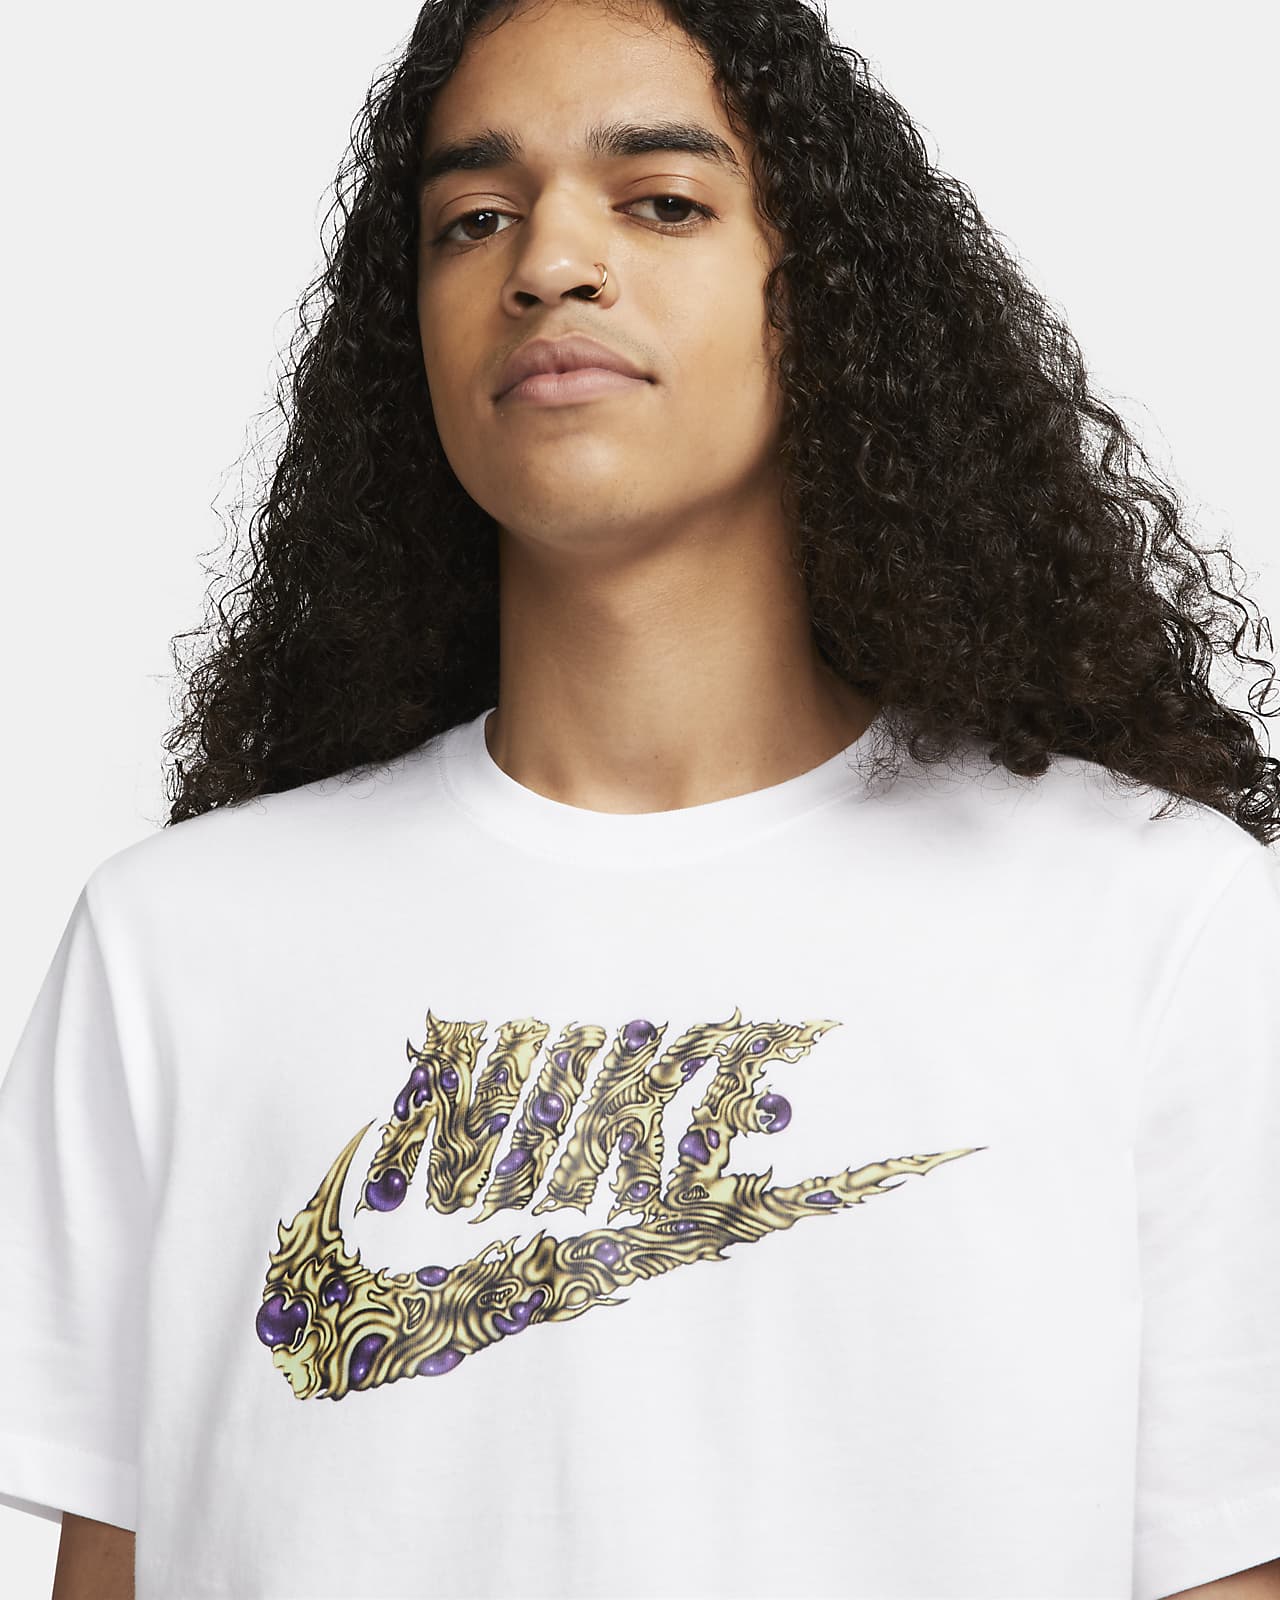 Nike Sportswear Men\'s T-Shirt.